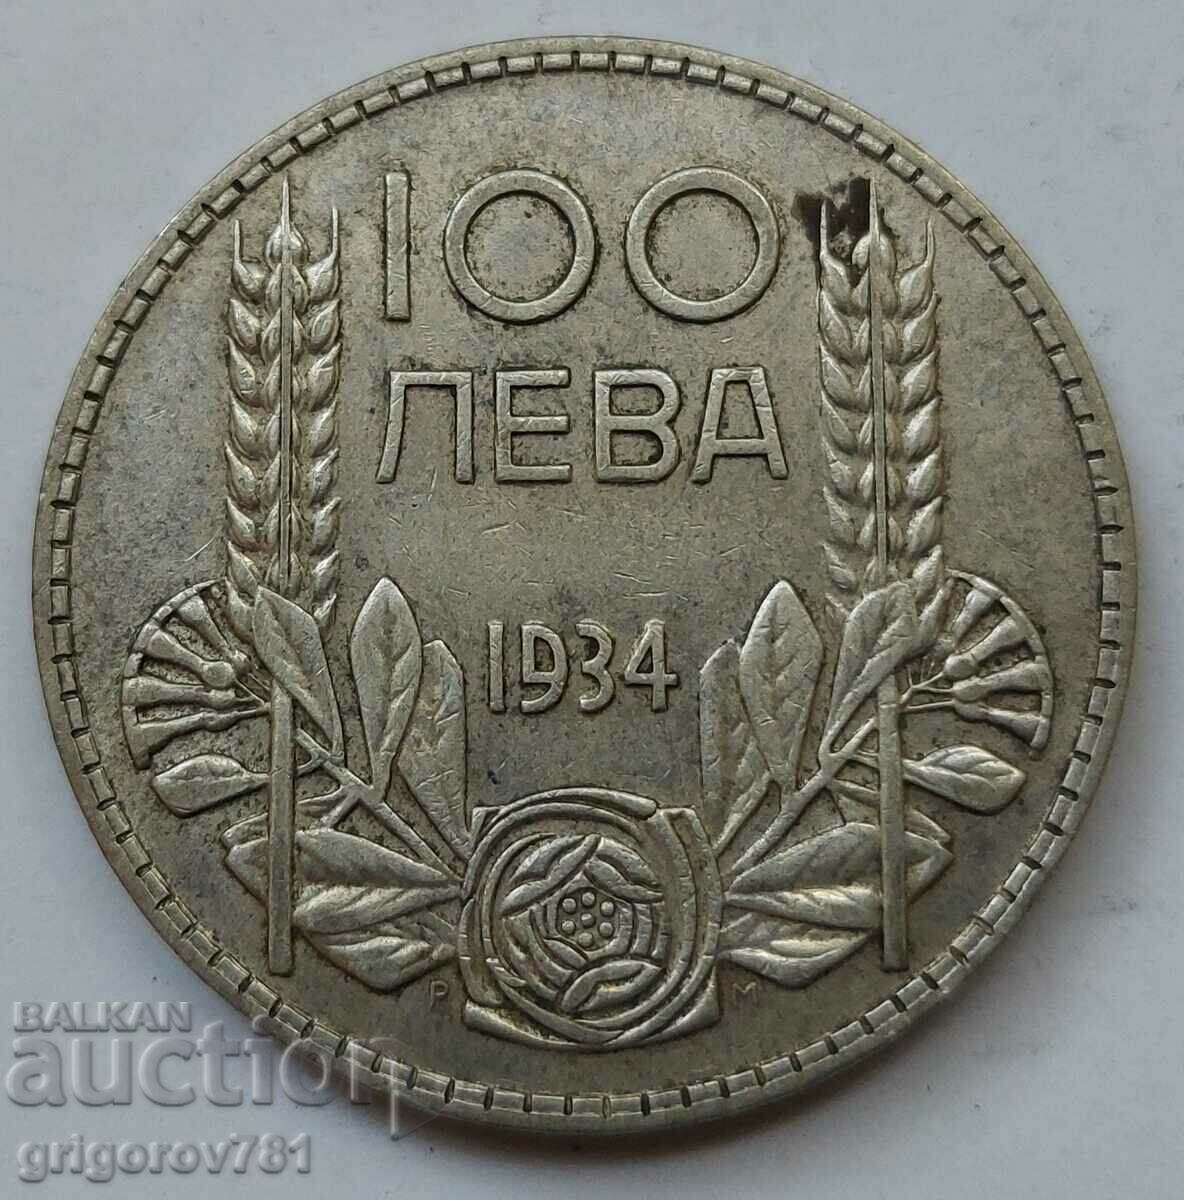 Ασήμι 100 λέβα Βουλγαρία 1934 - ασημένιο νόμισμα #107